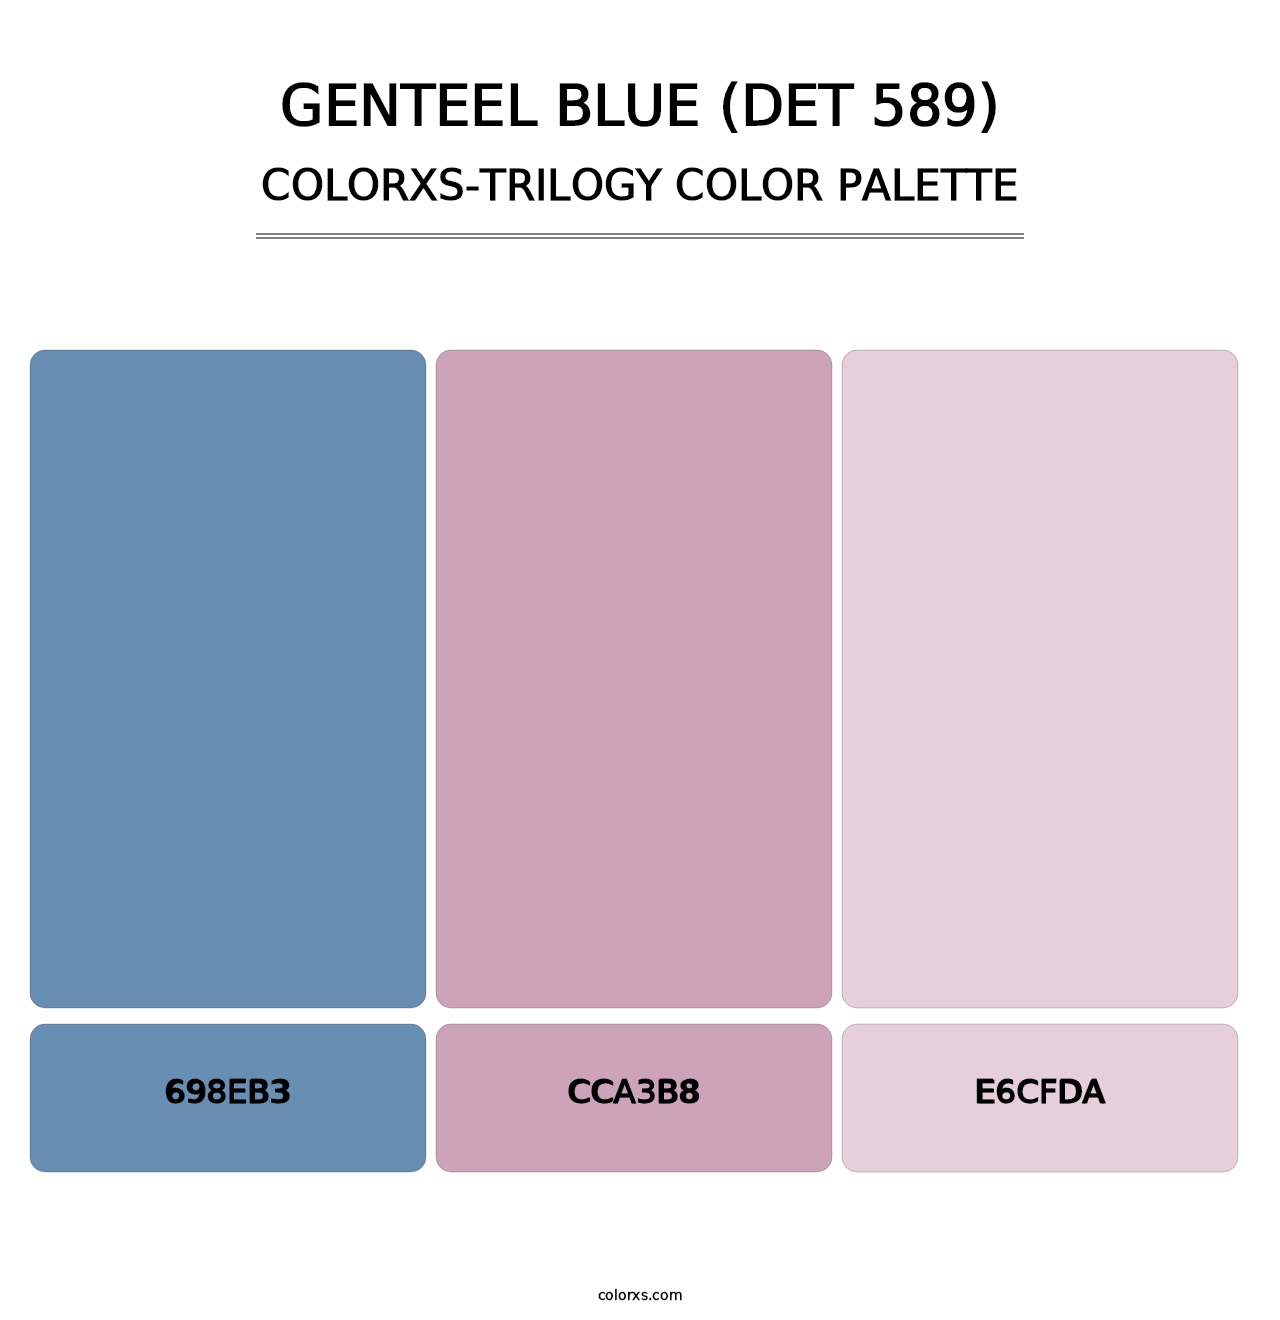 Genteel Blue (DET 589) - Colorxs Trilogy Palette